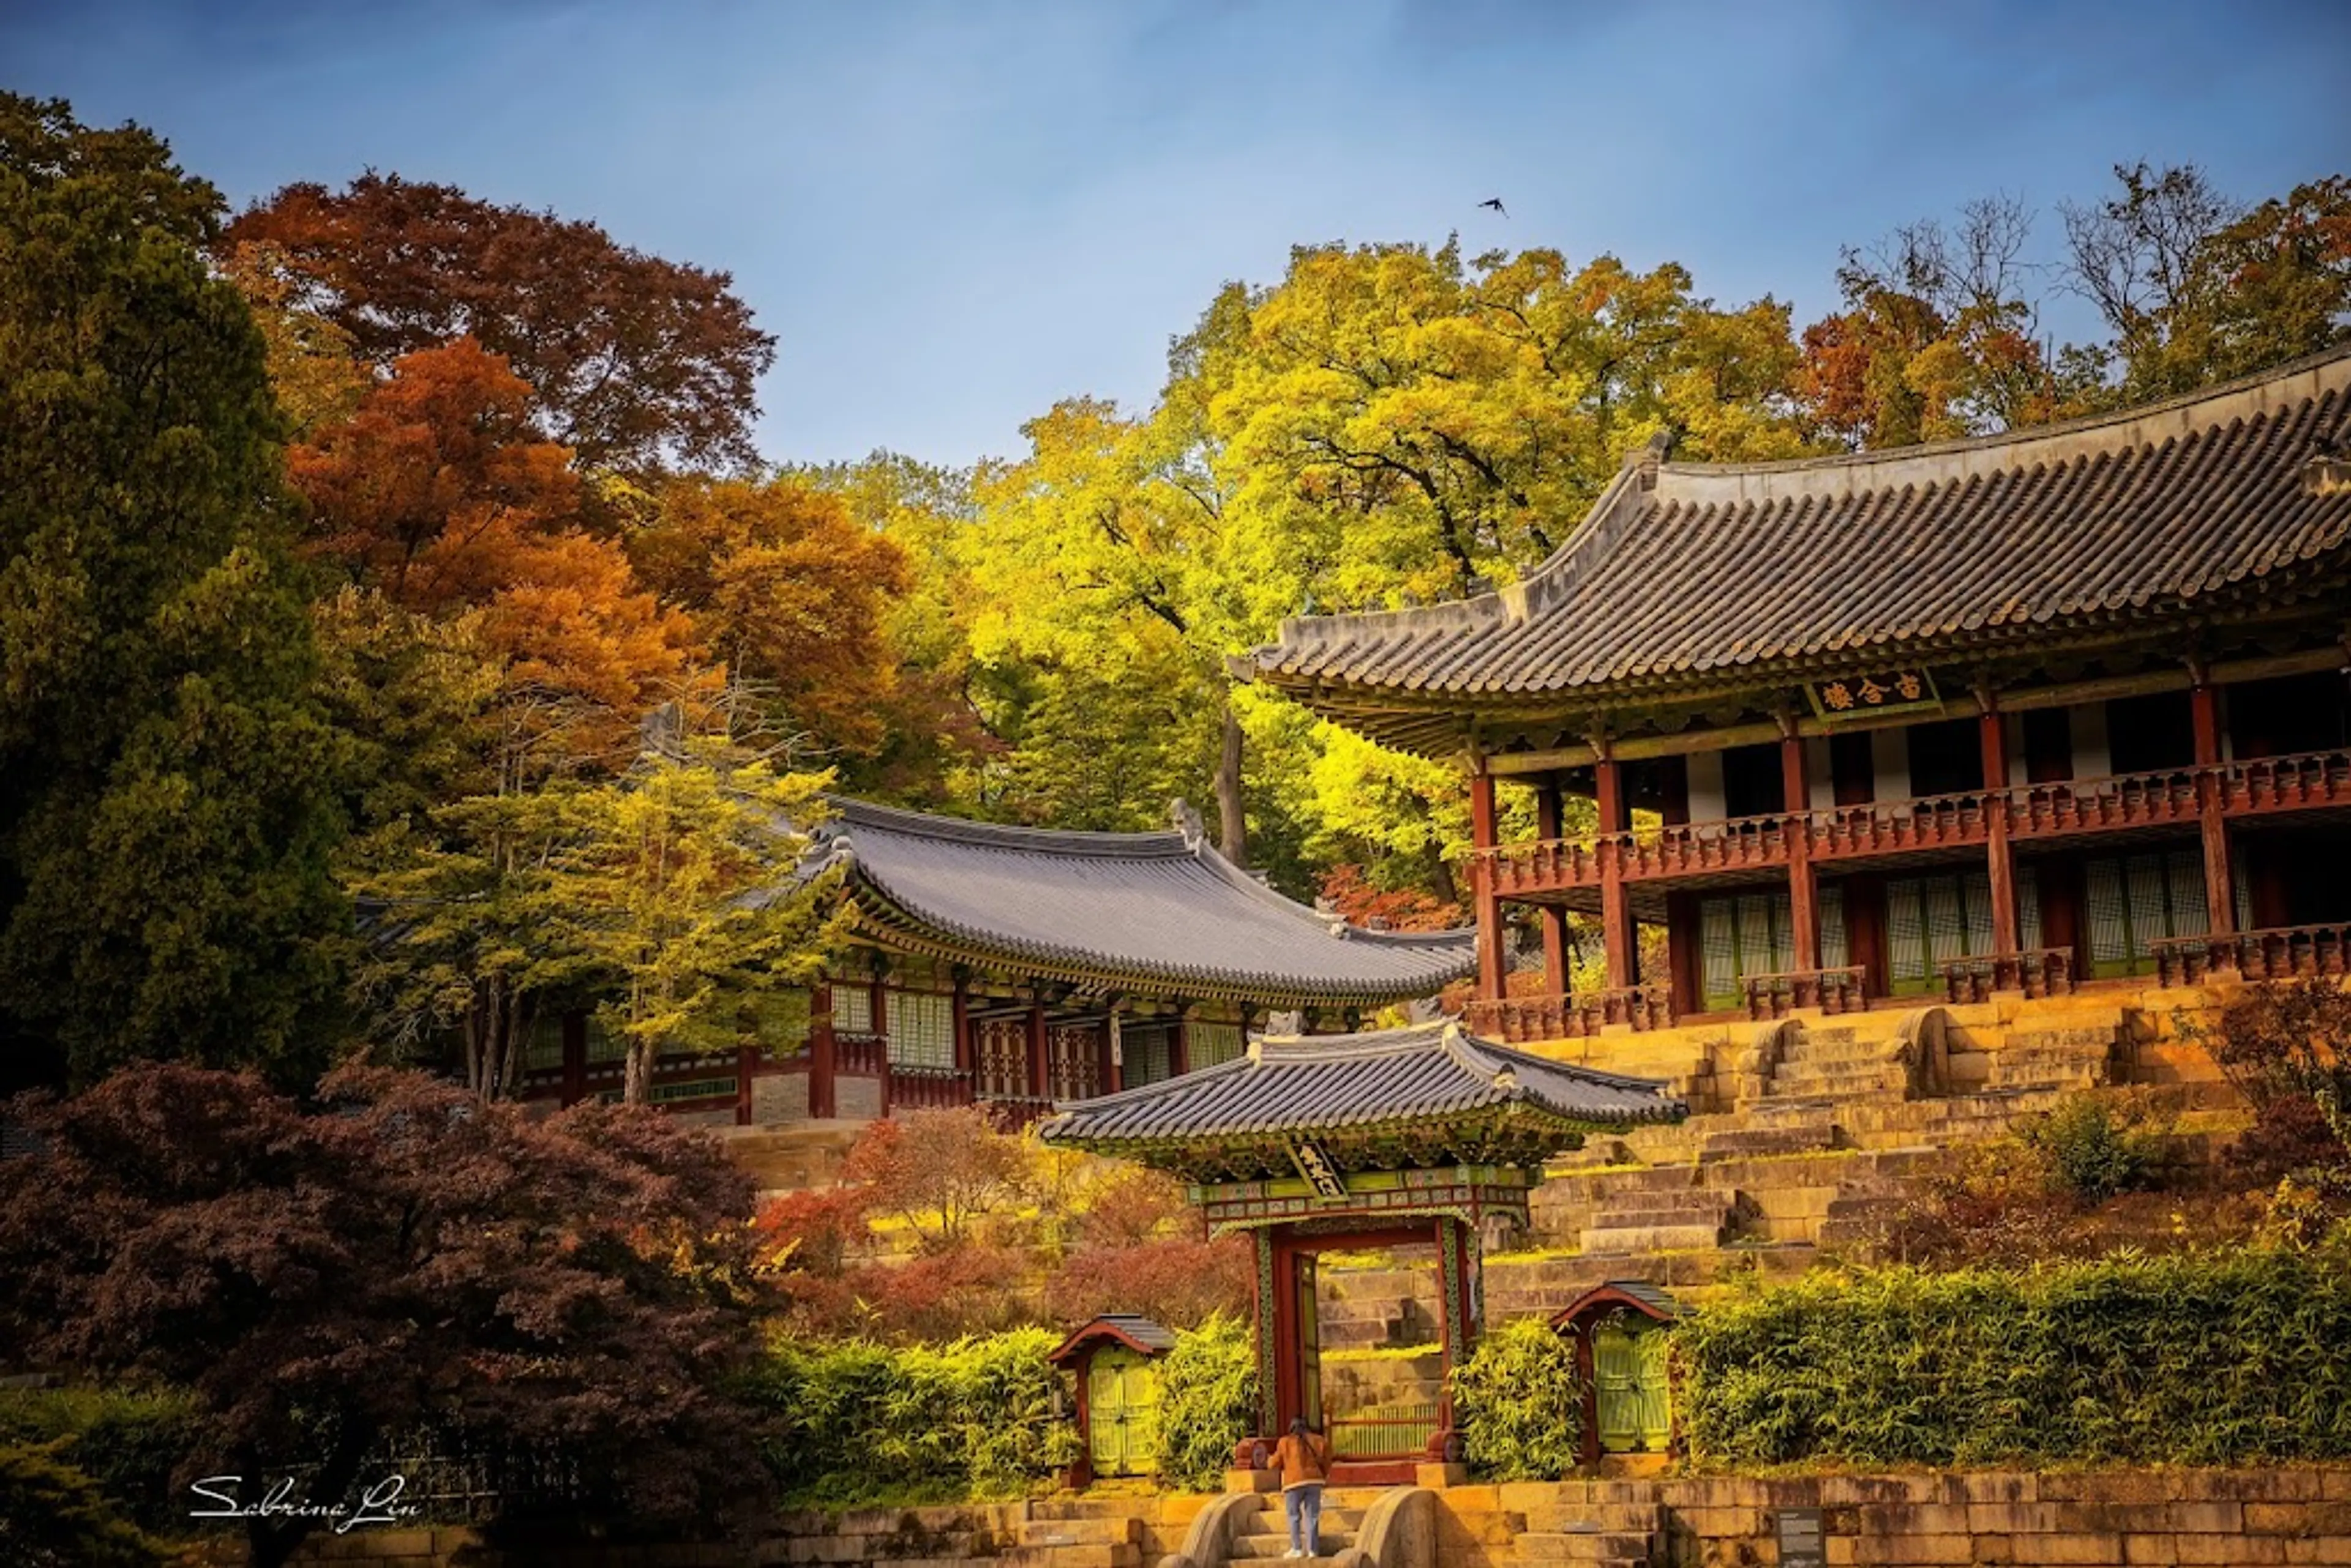 Changdeokgung Palace and Secret Garden